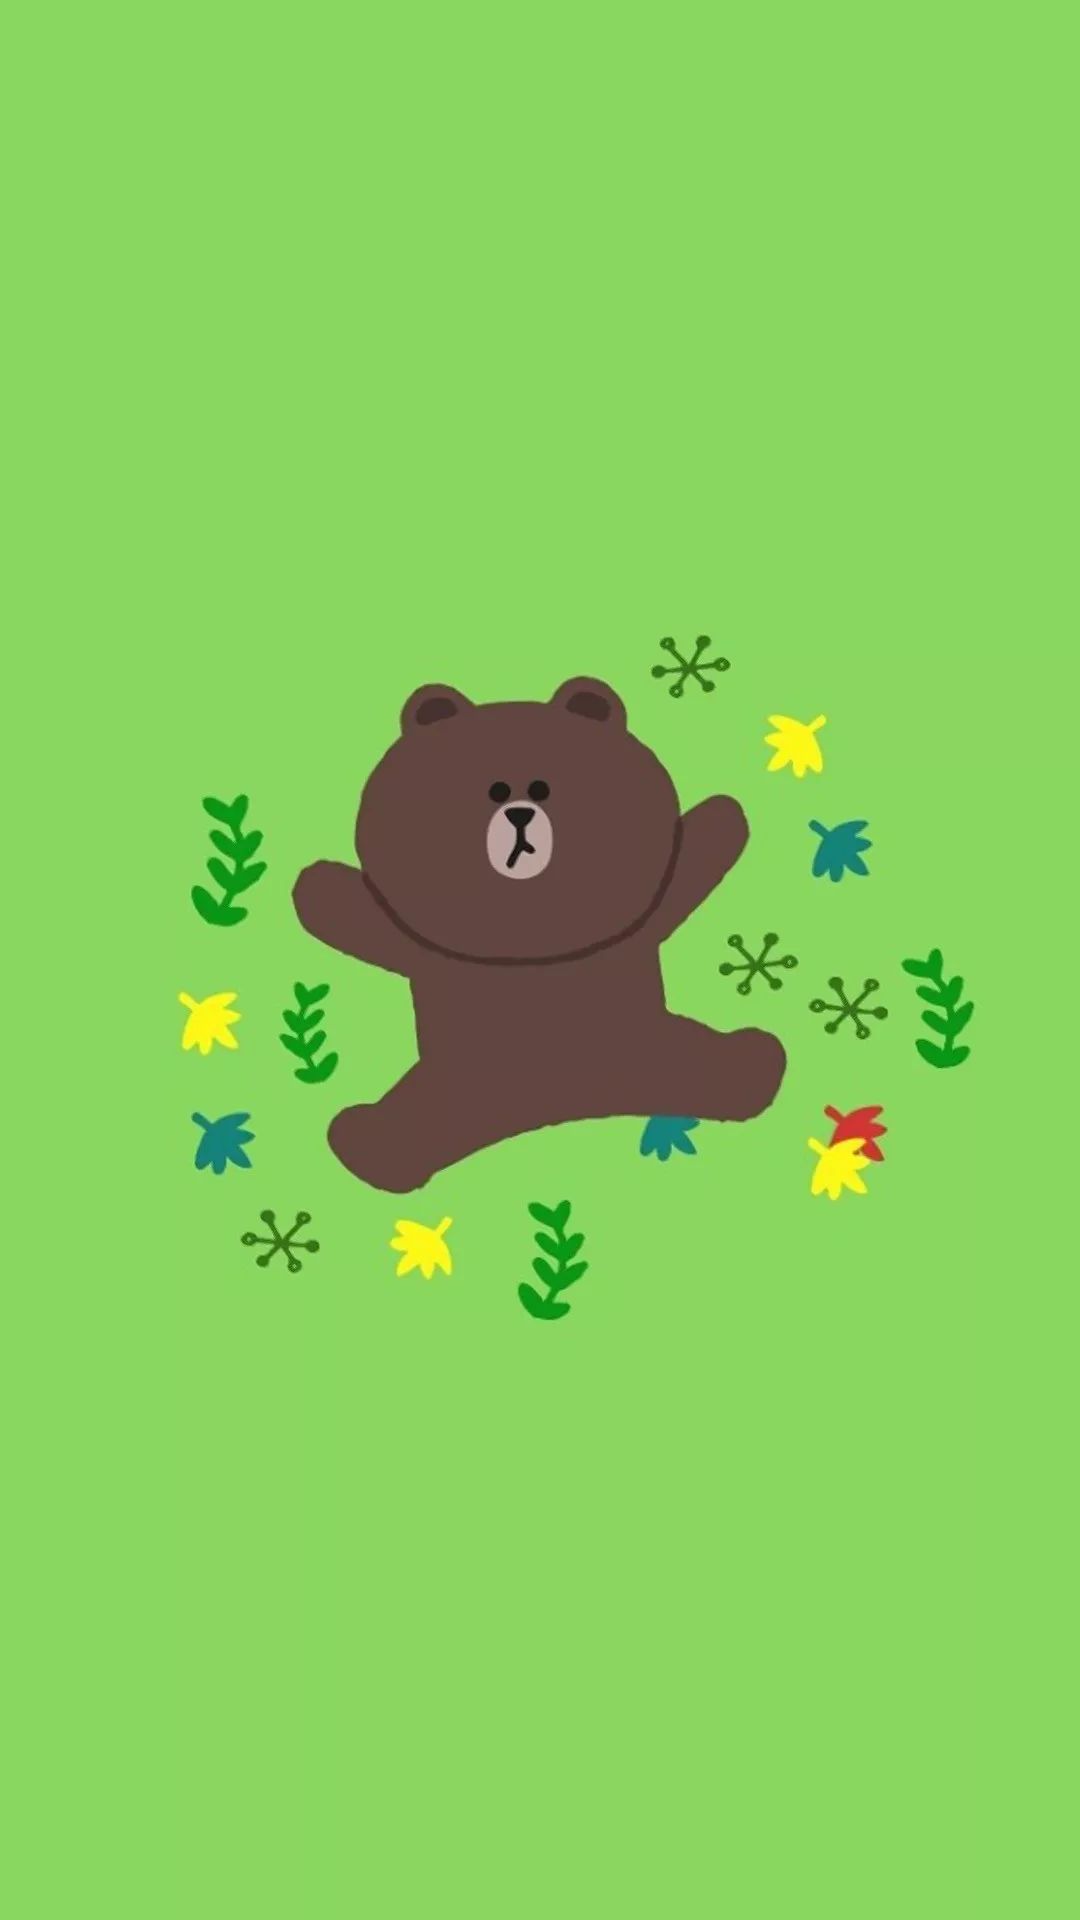 布朗熊绿色壁纸图片